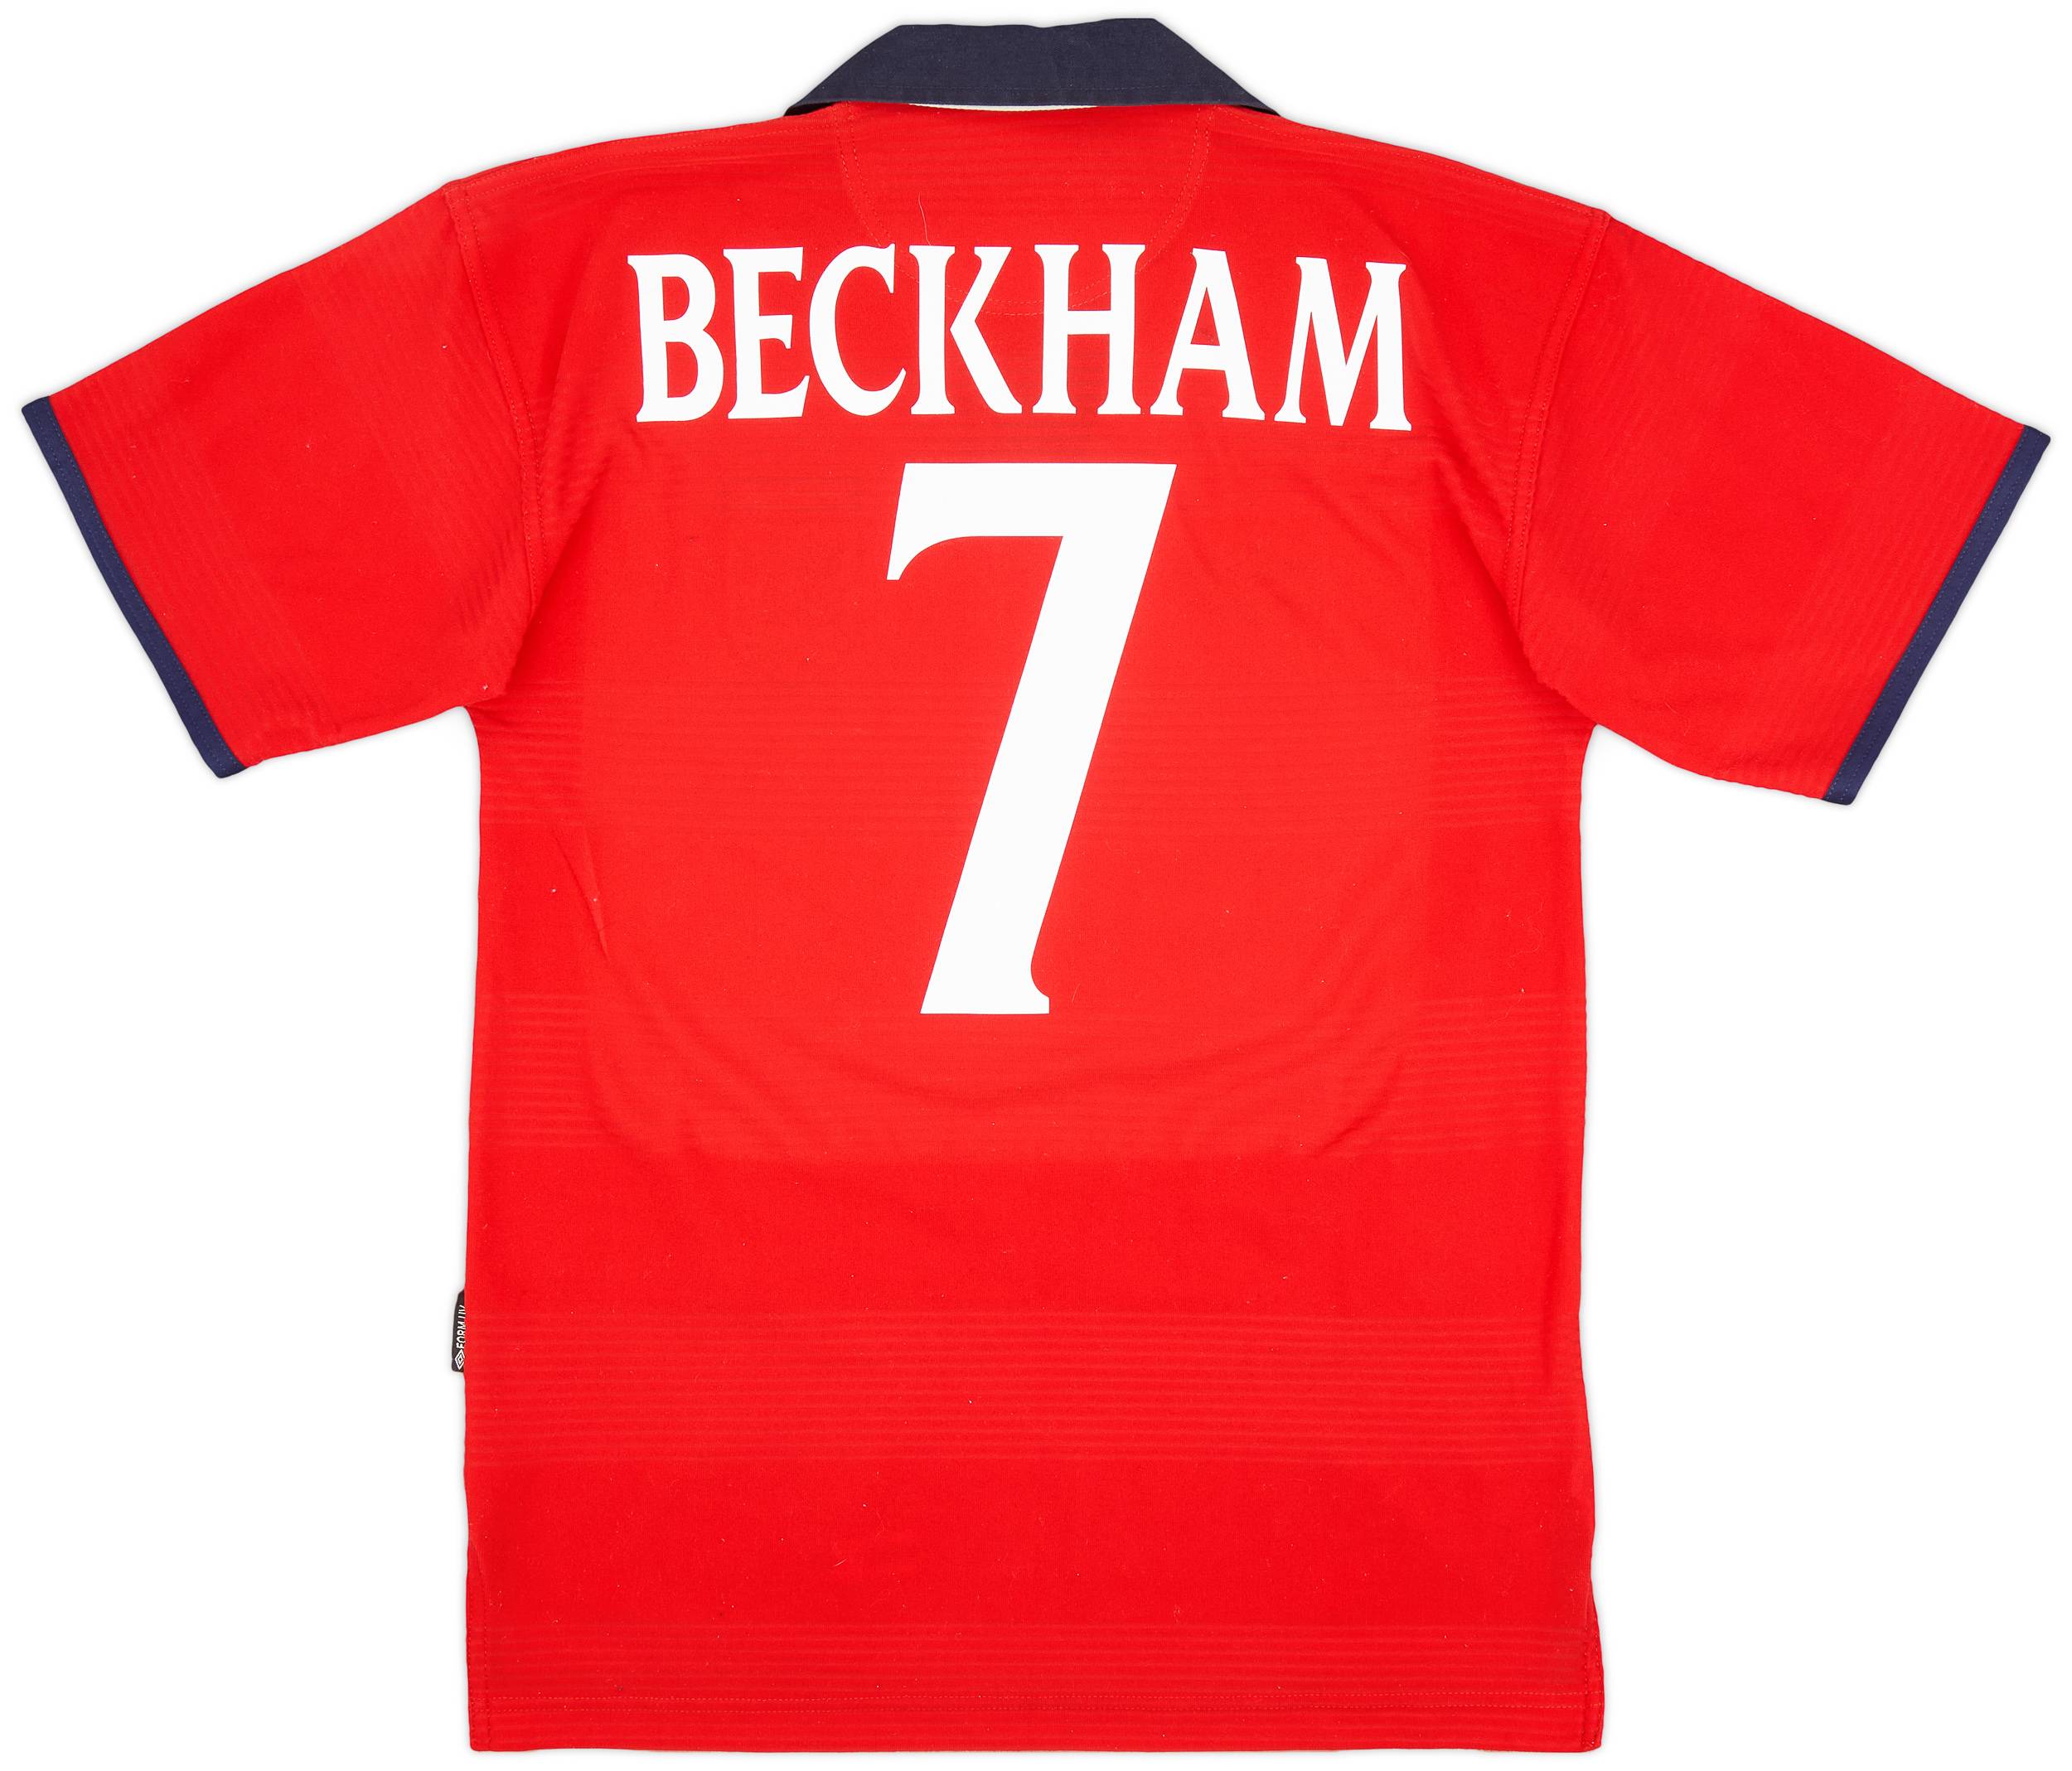 1999-01 England Away Shirt Beckham #7 - 5/10 - (XL)